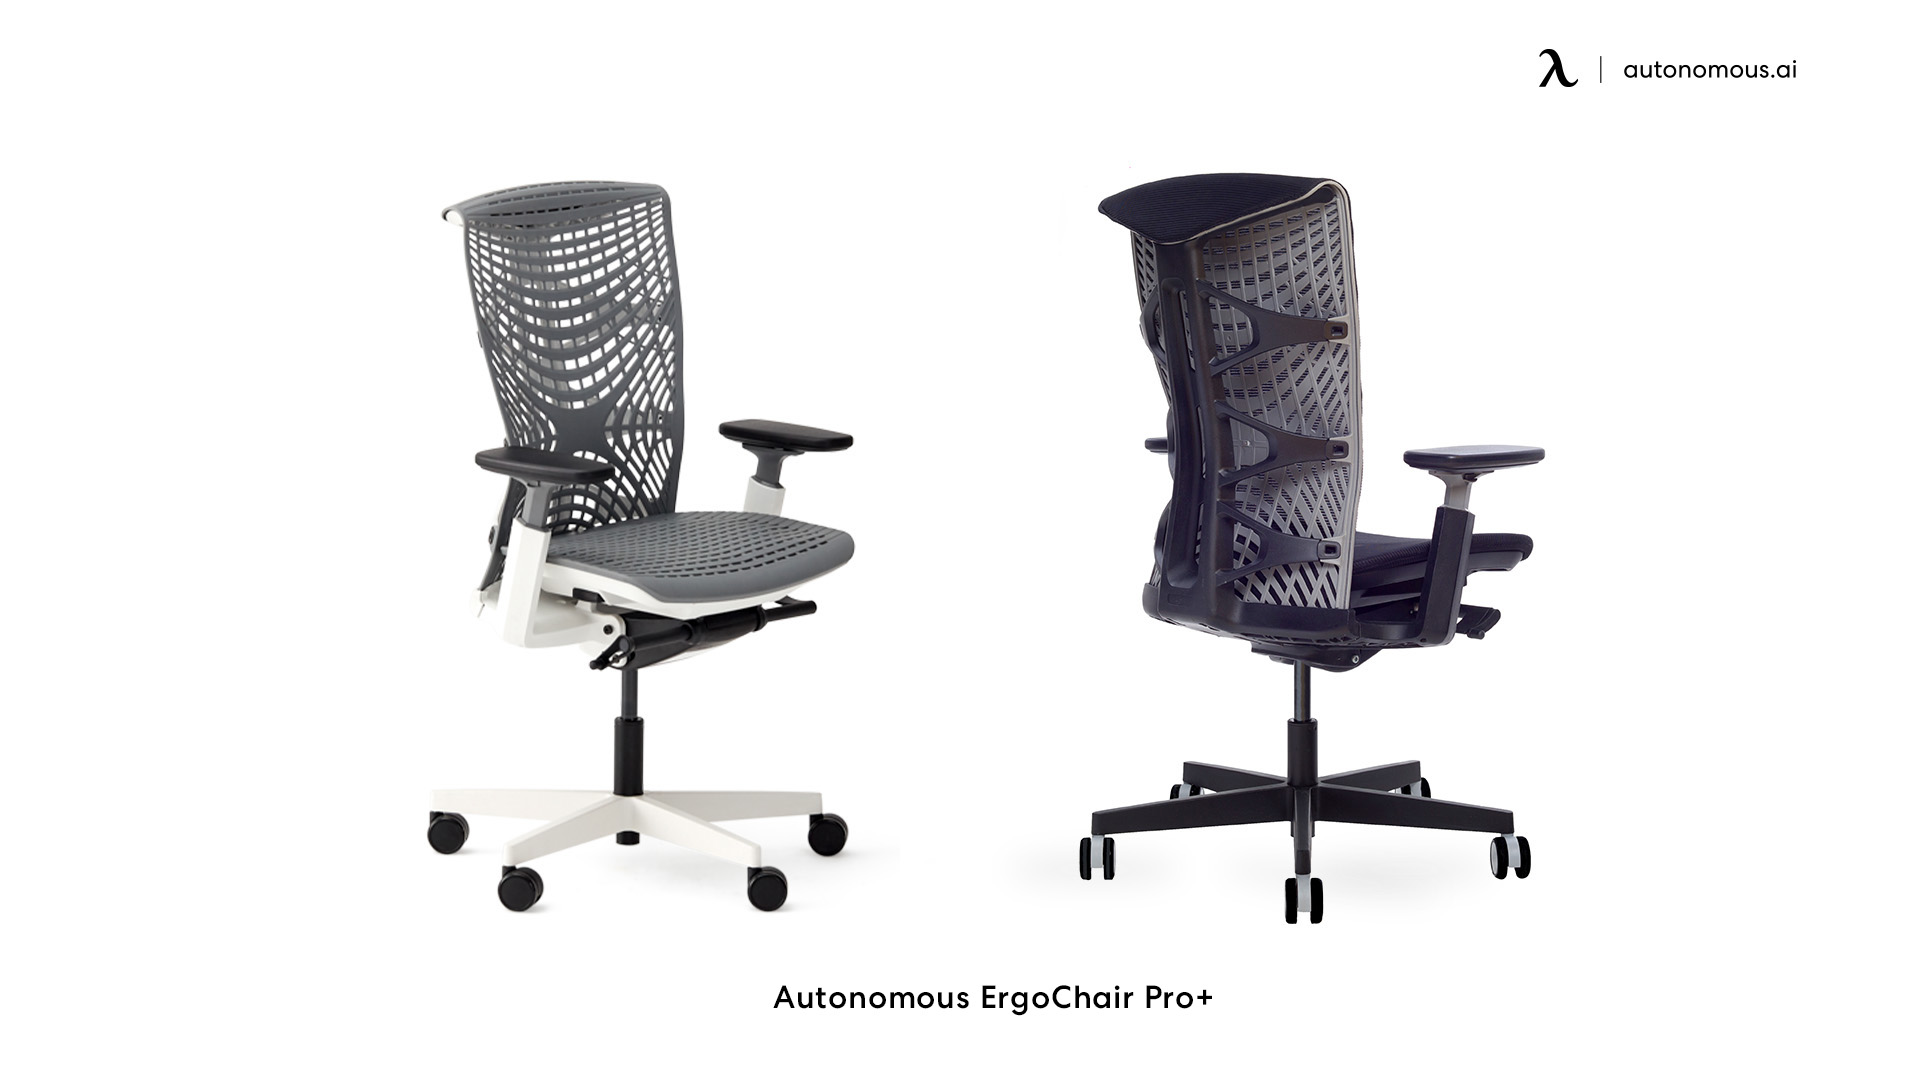 ErgoChair Pro+ tall office chair for standing desk